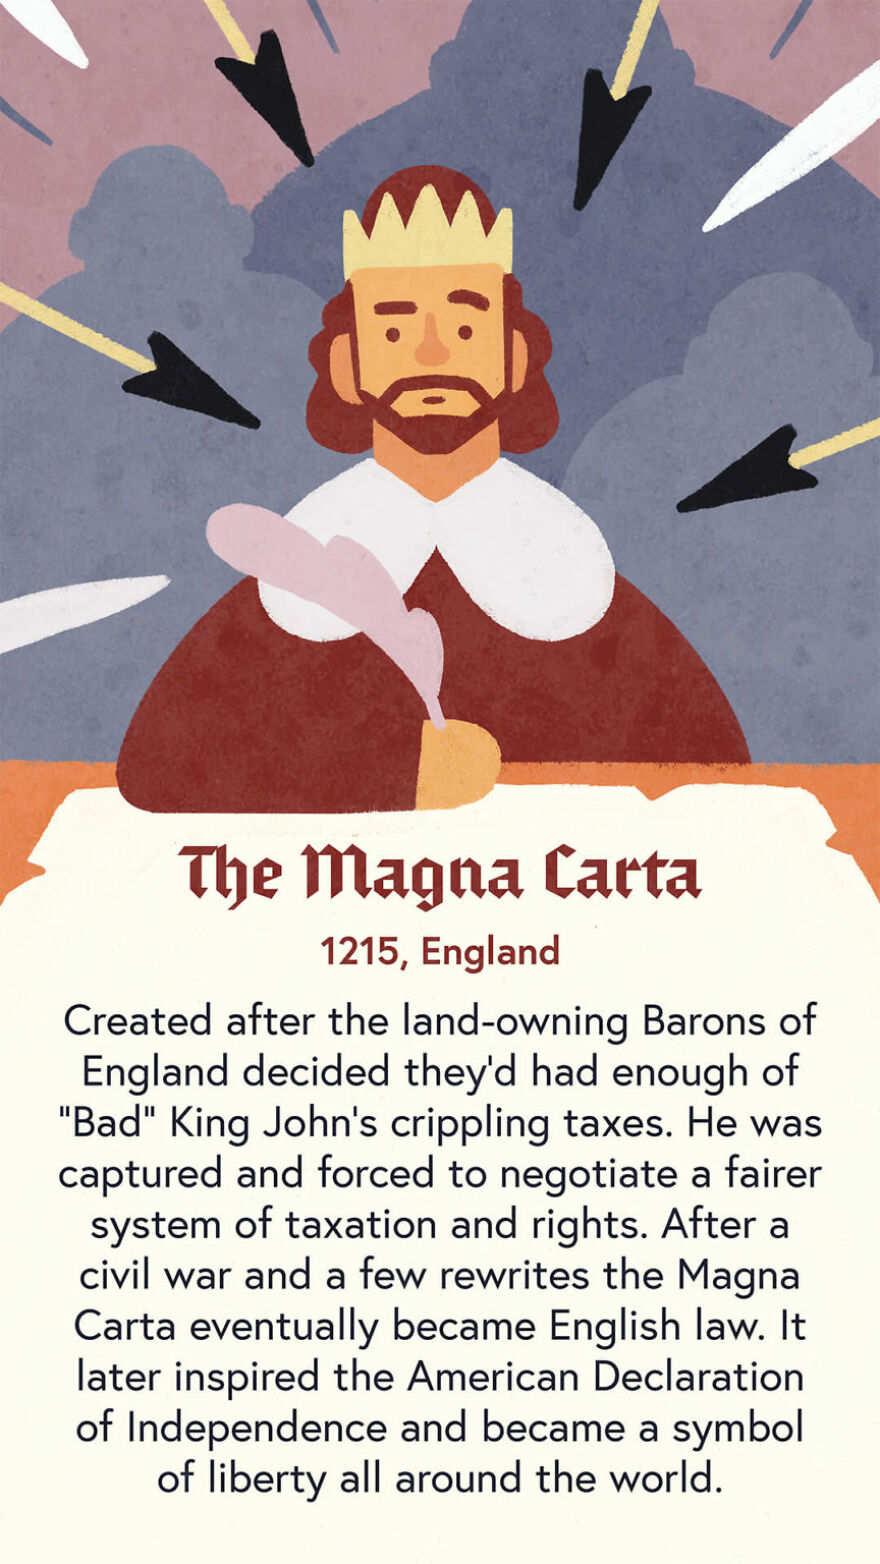 The Magna Carta, 1215, England